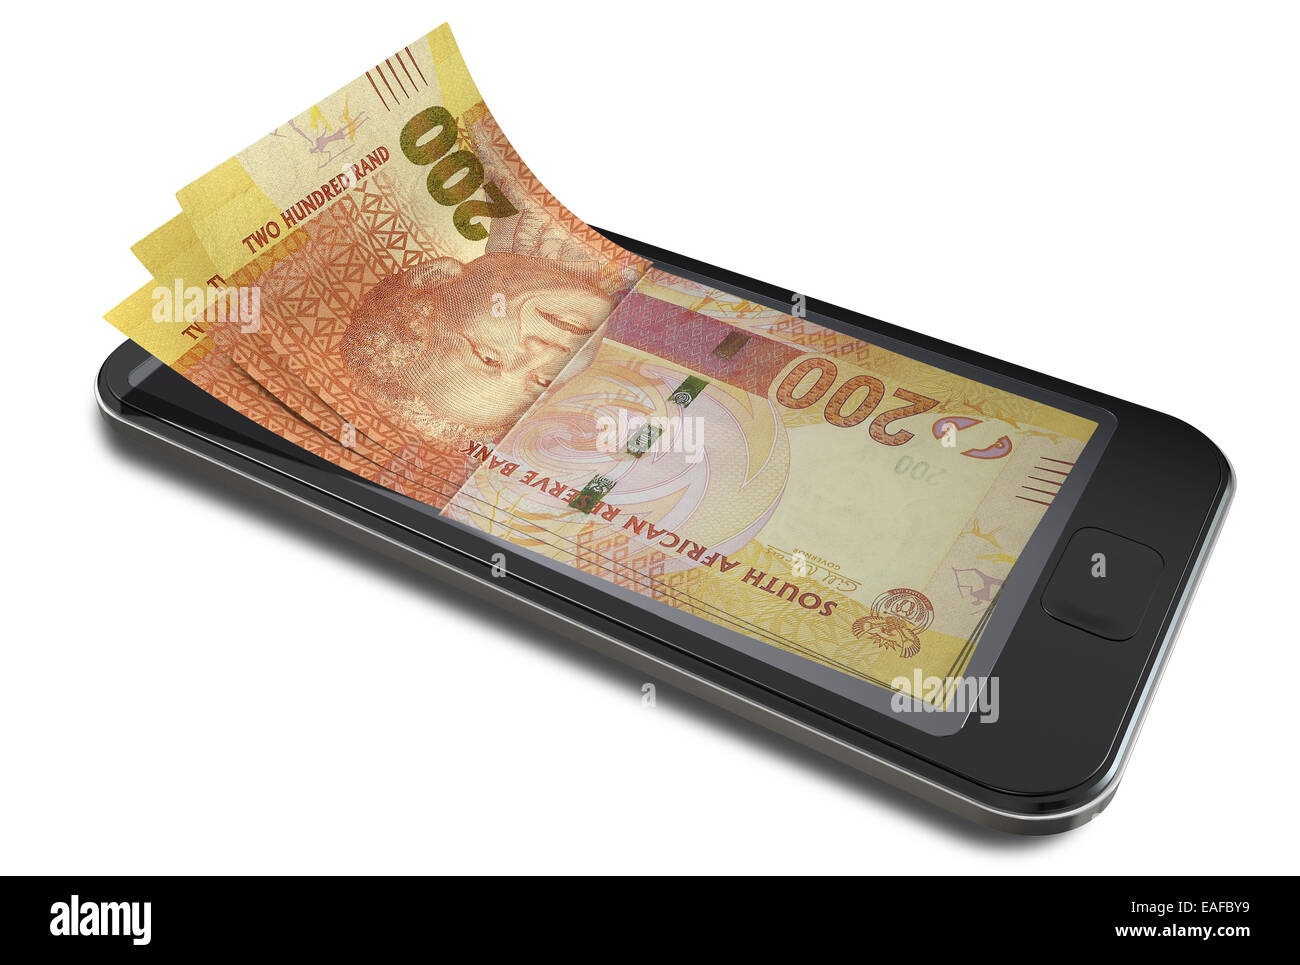 Un concept de droit d'un smart phone avec écran digital sur l'évolution de l'argent réel en rand sud africain signifiant billets Banque D'Images